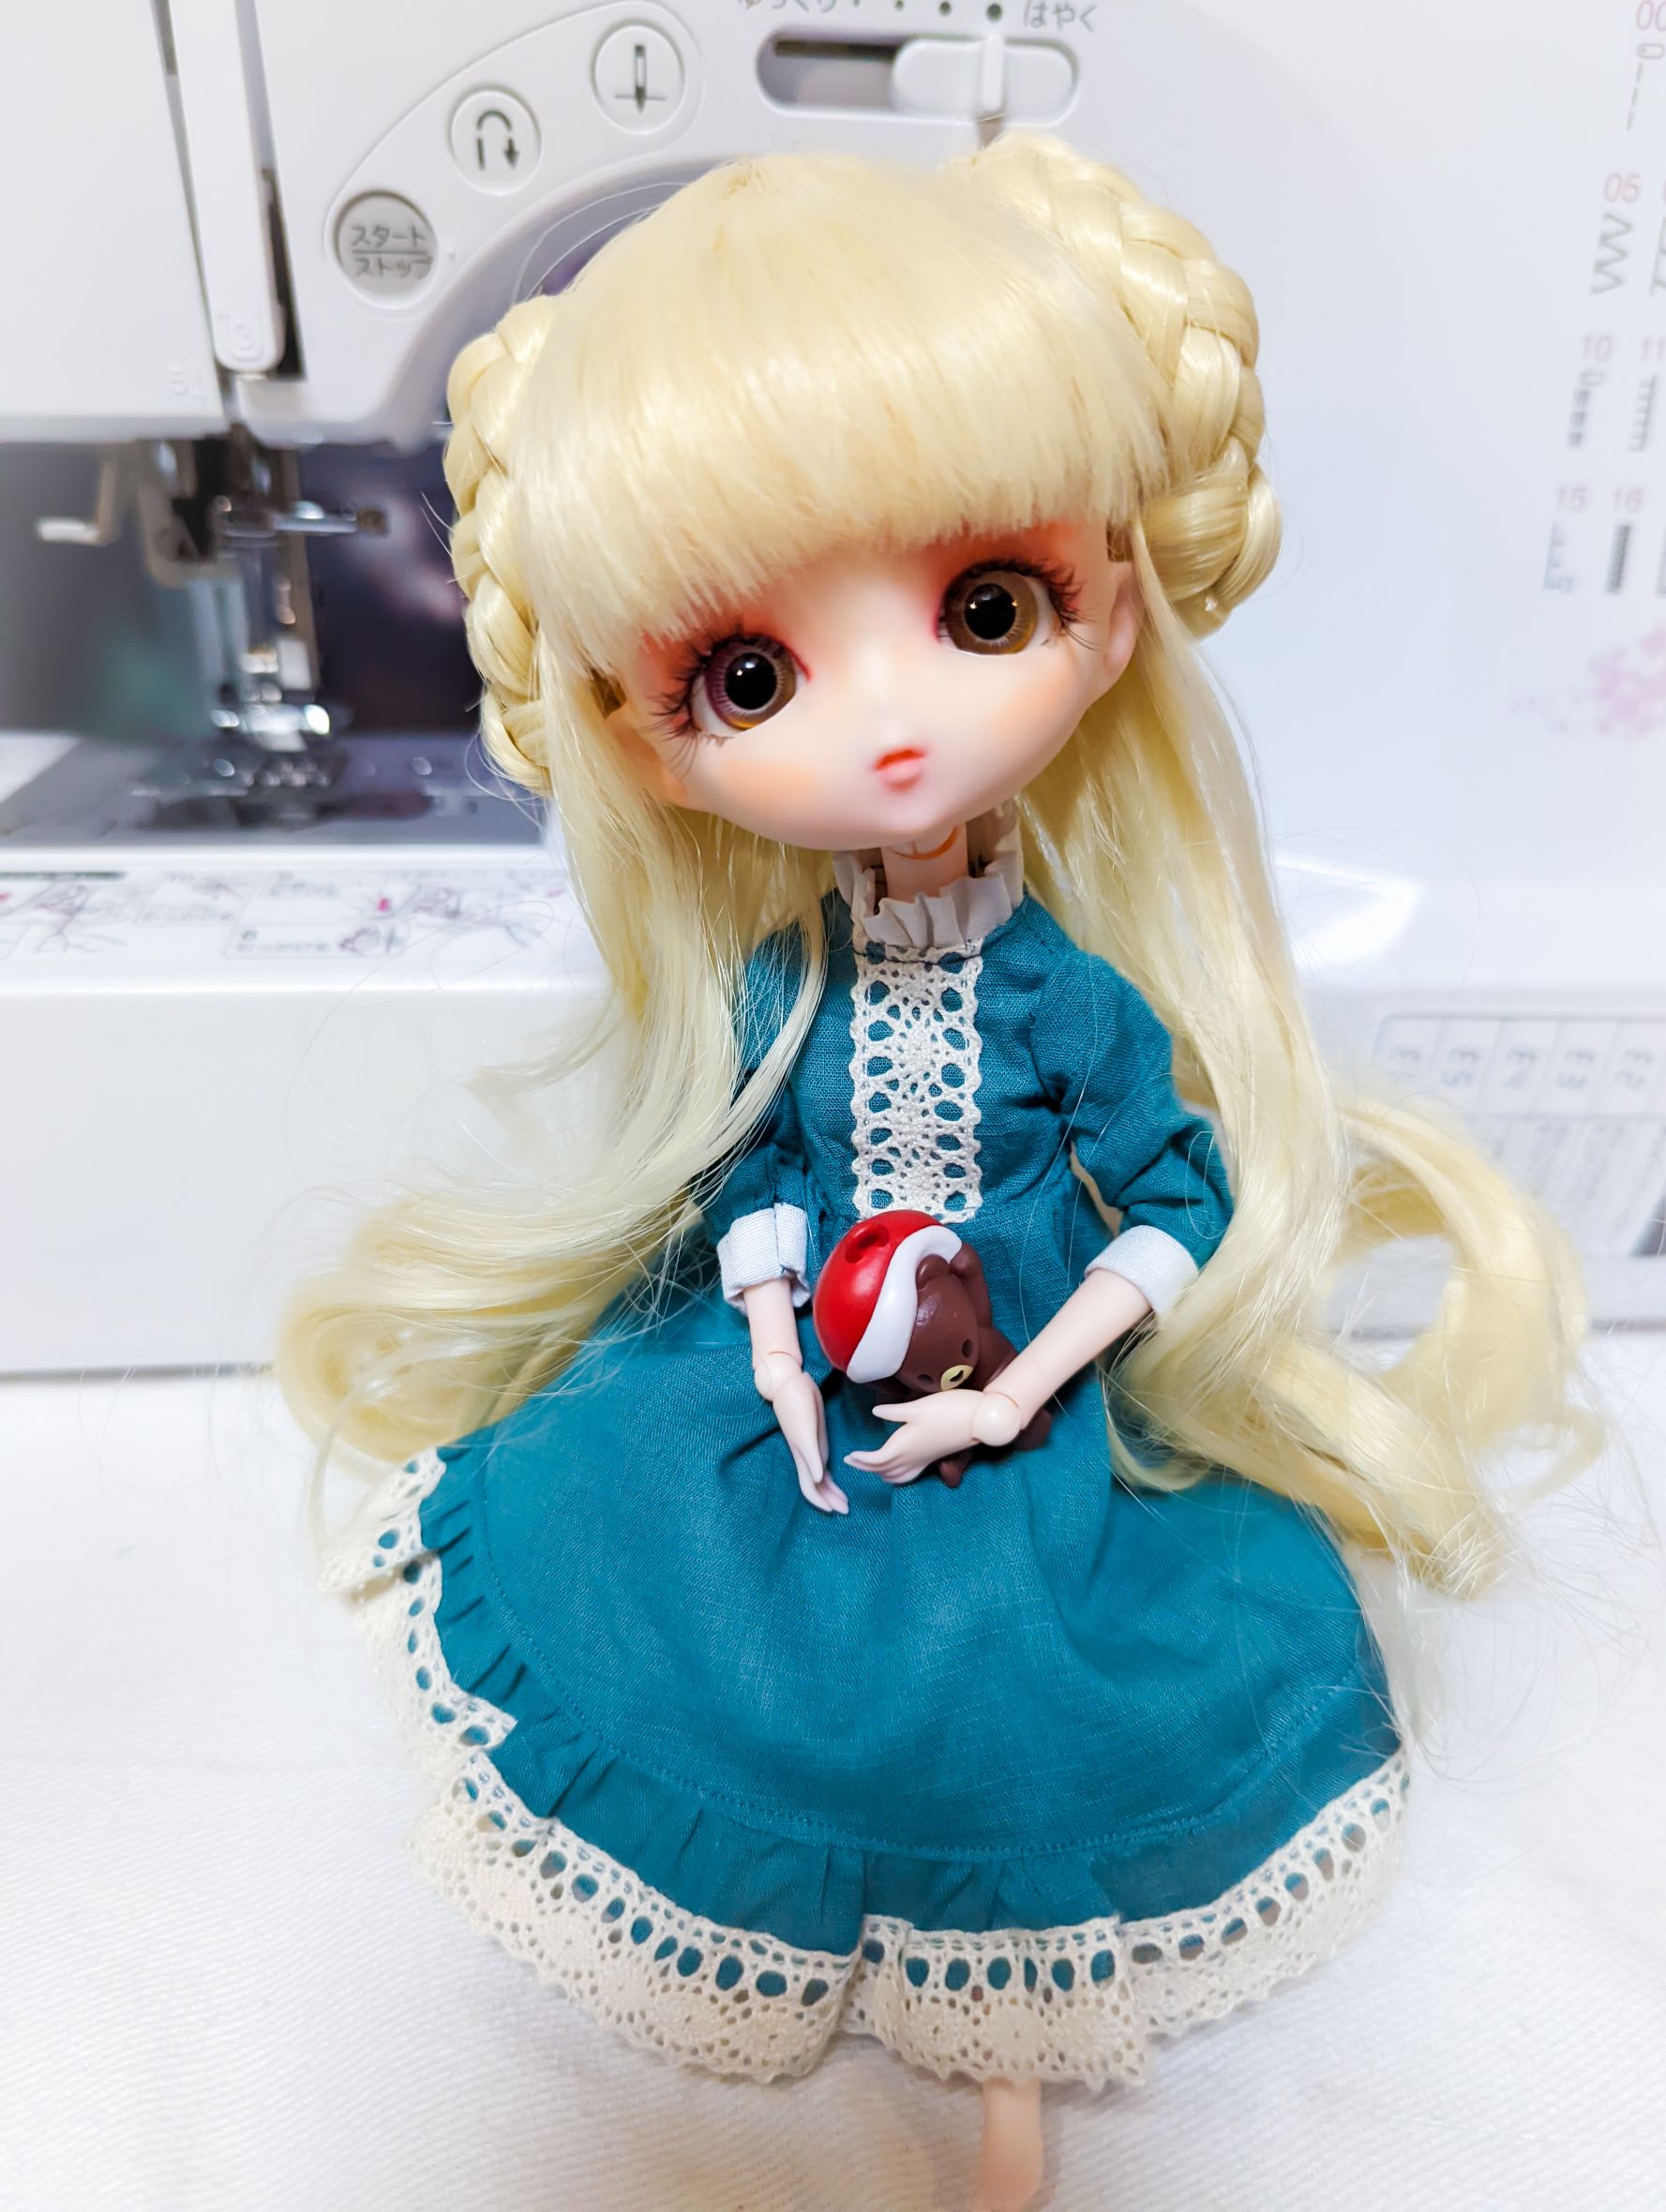 公式セール価格 ハルモニアブルーム Blythe harmoniabloom ドレス おもちゃ/人形